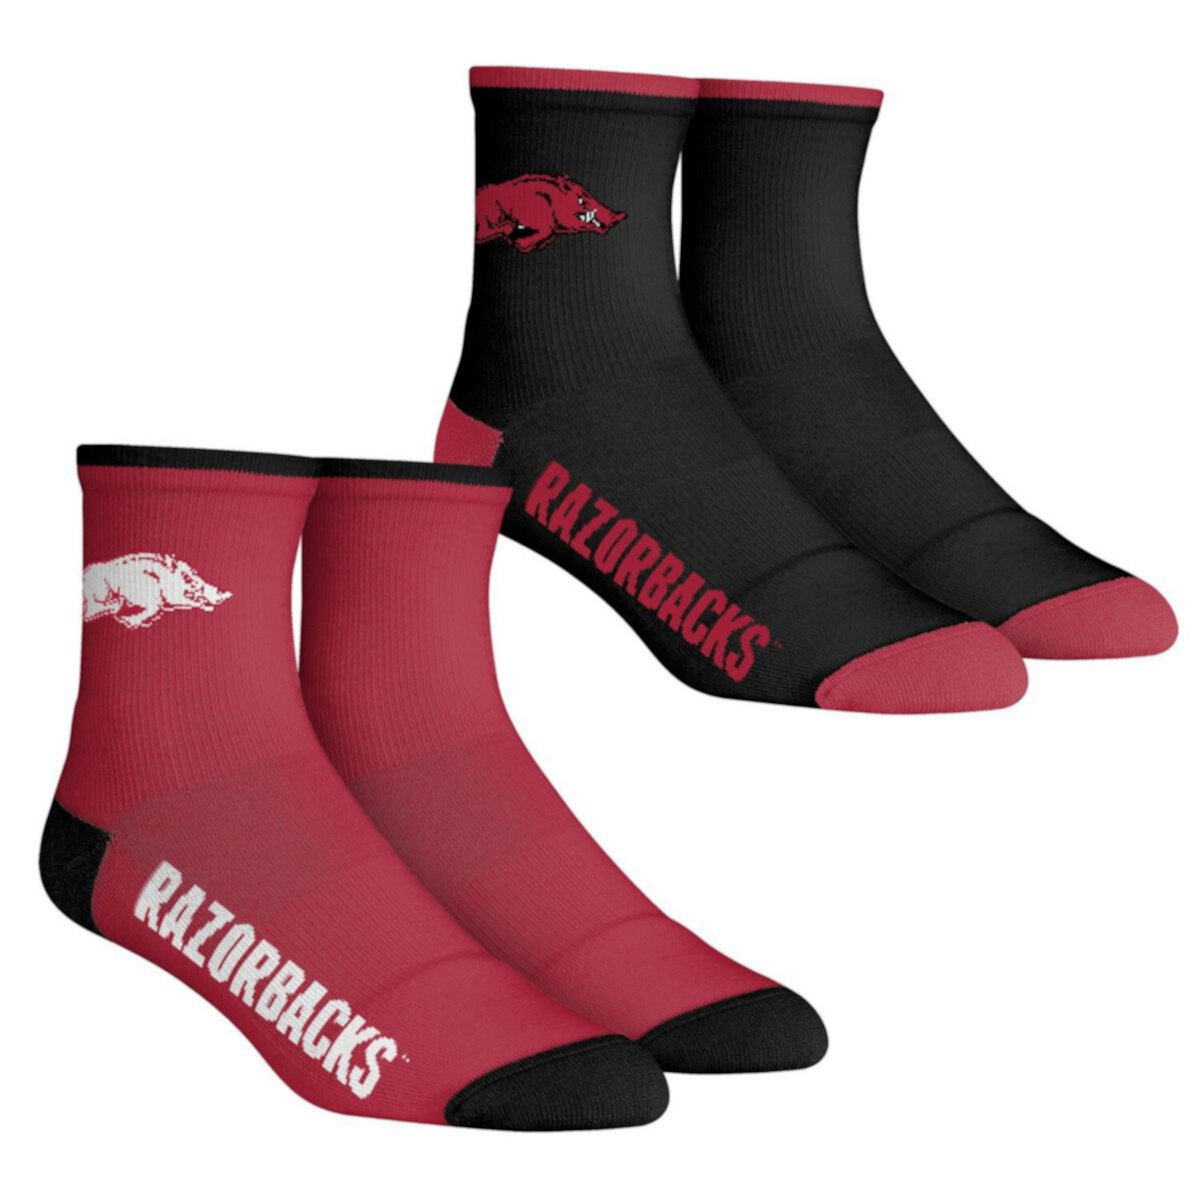 Мужские носки Rock Em Socks Arkansas Razorbacks Core Team, комплект из 2 носков длиной в четверть длины Unbranded